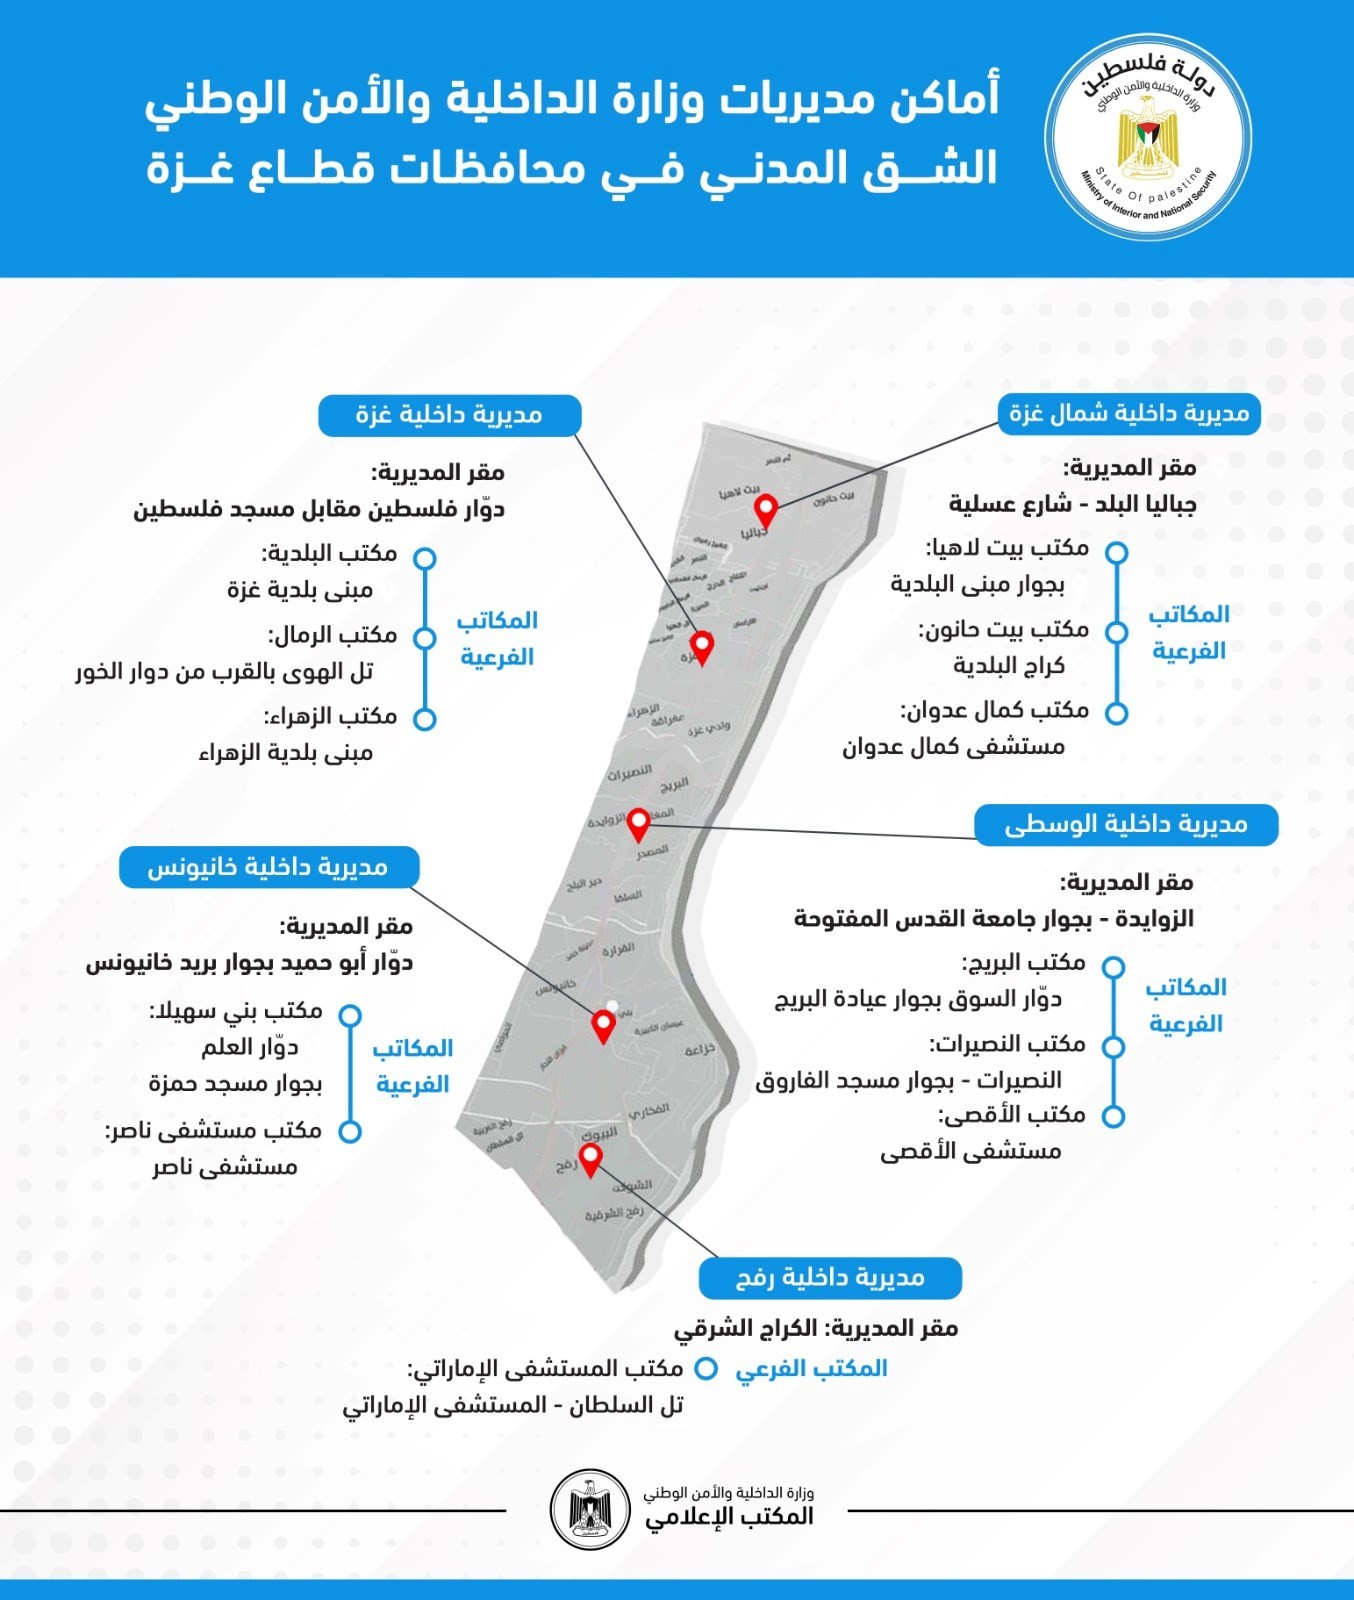 الداخلية "الشق المدني" تنشر تحديثاً لأماكن مديرياتها في محافظات غزة